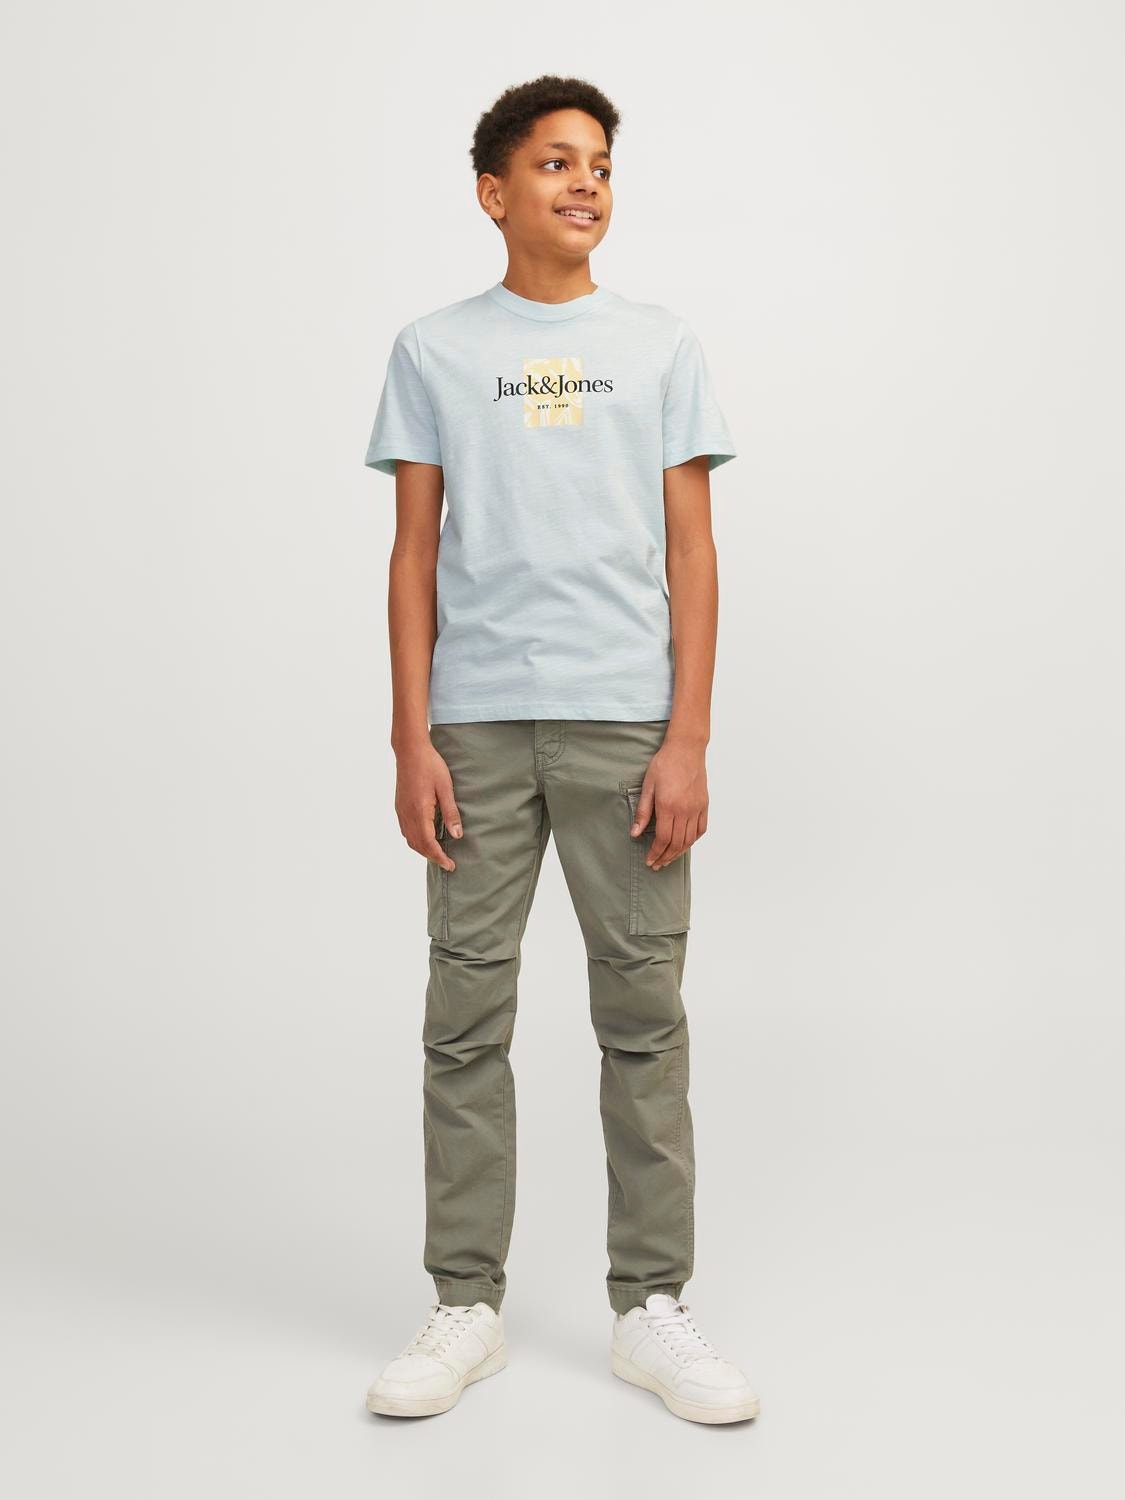 Jack & Jones Gedrukt T-shirt Voor jongens -Skylight - 12253973